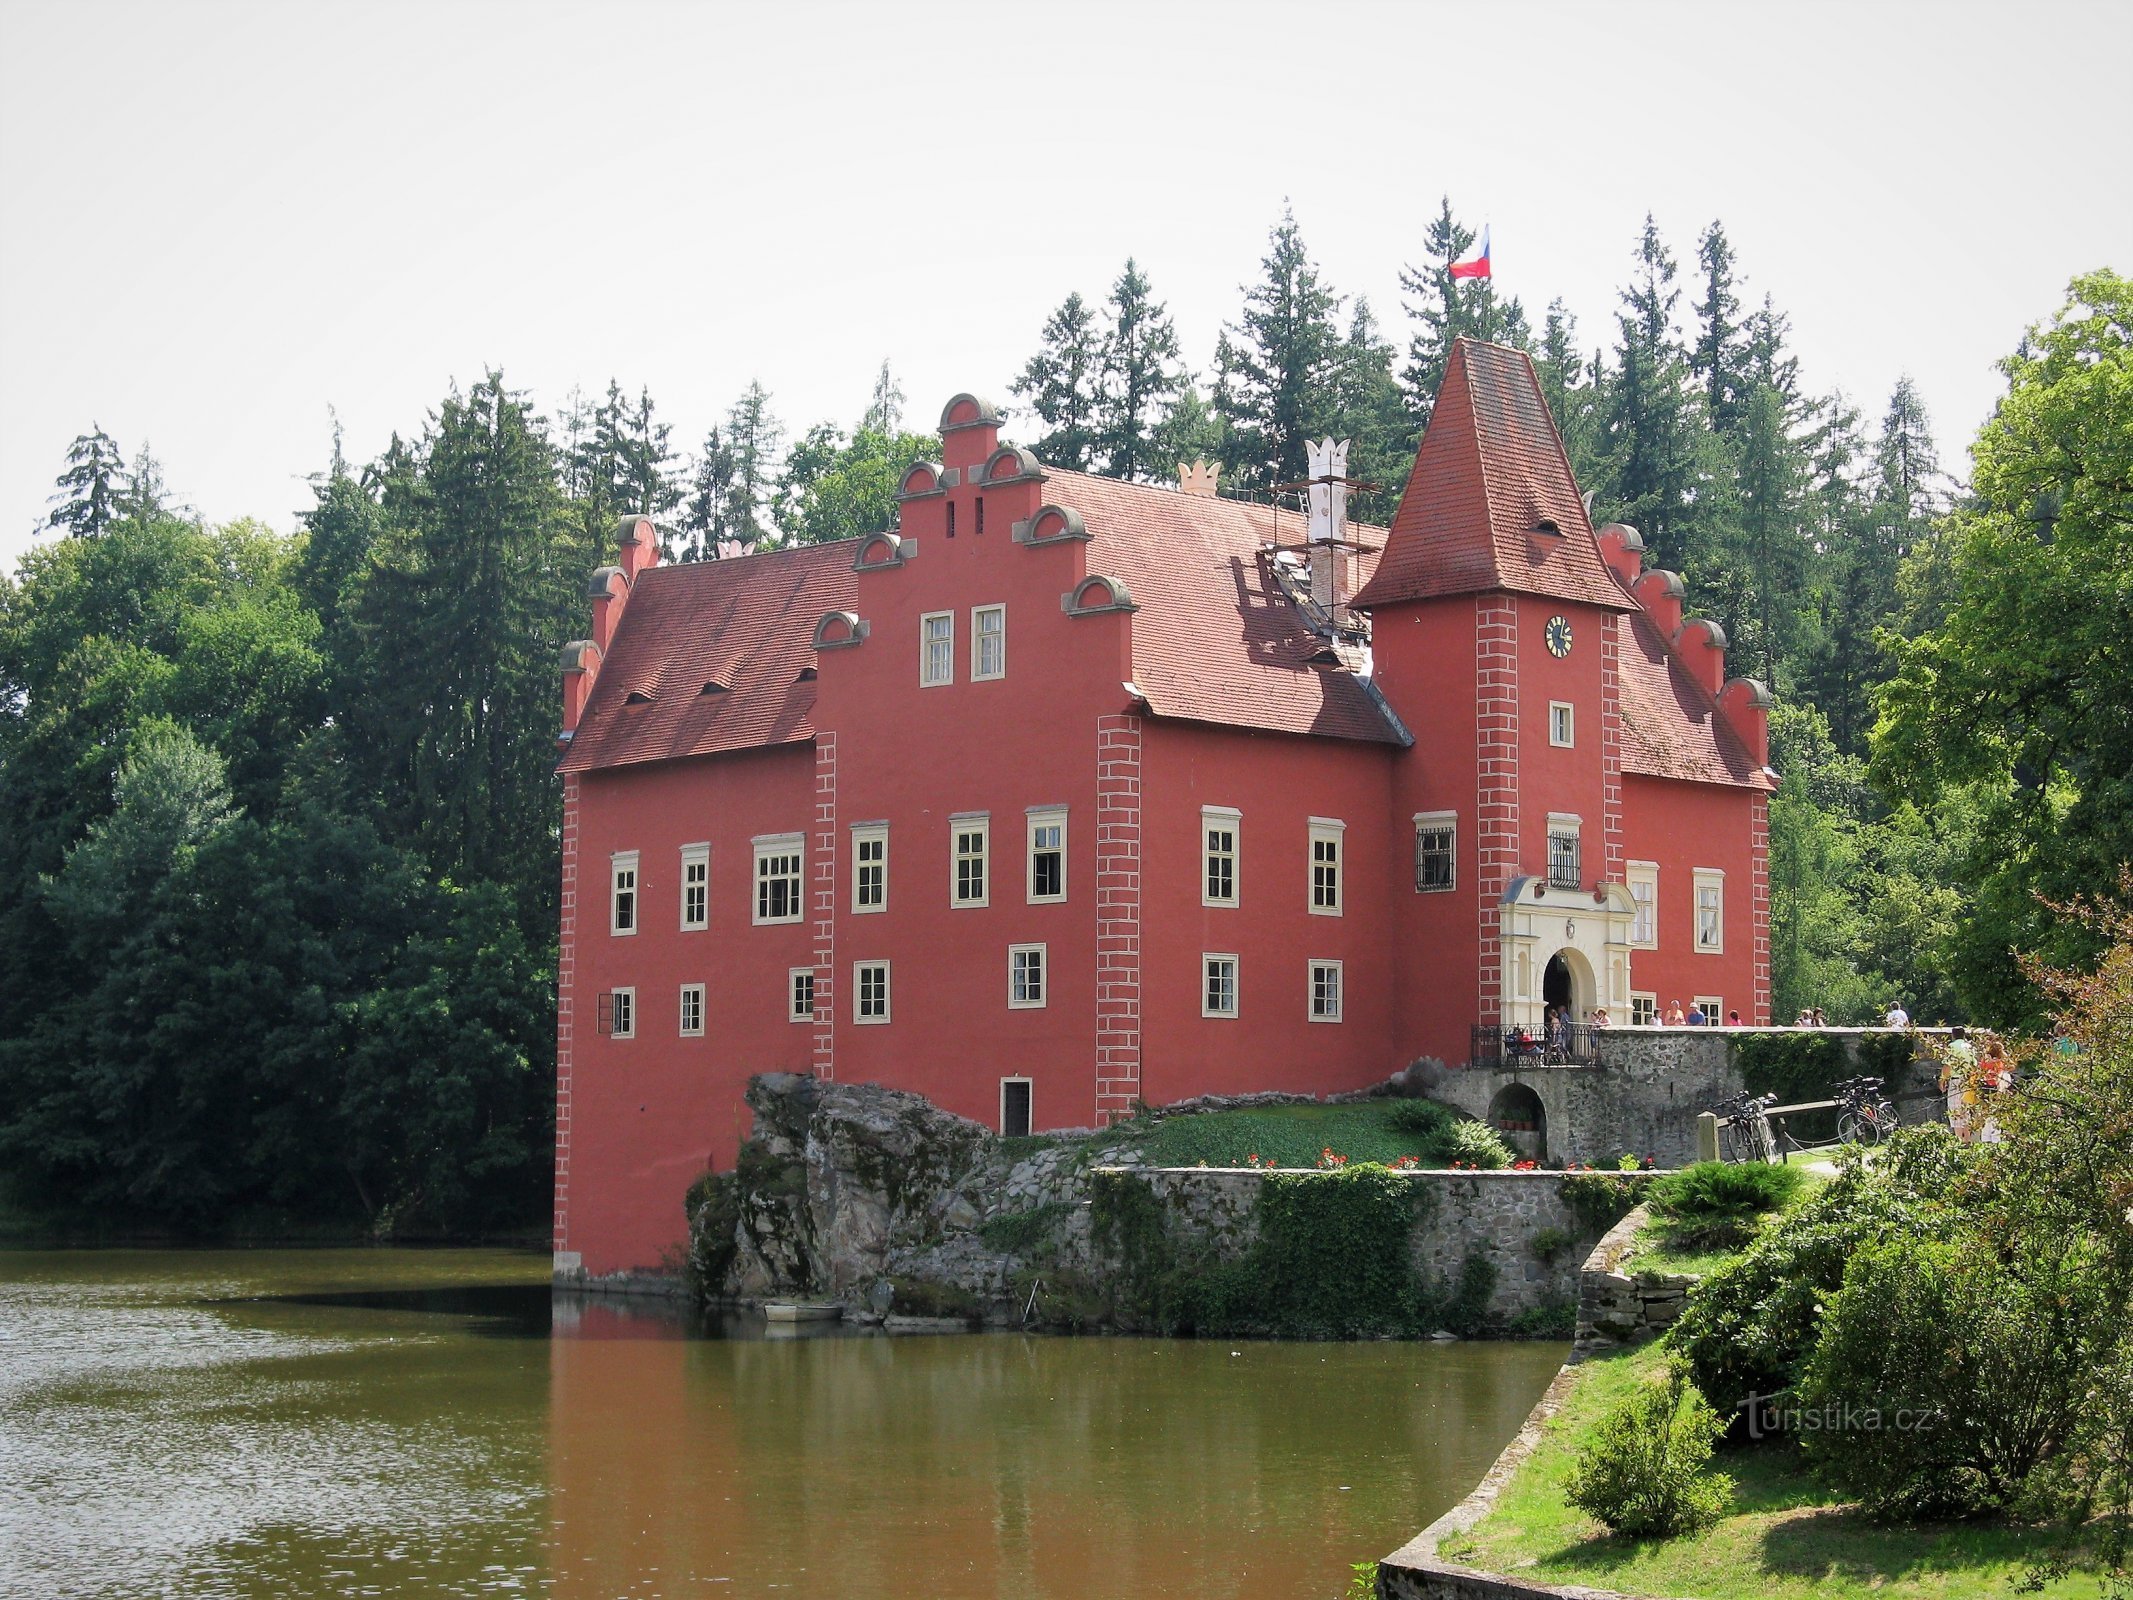 Xung quanh Zámecký rybník ở Červená Lhota